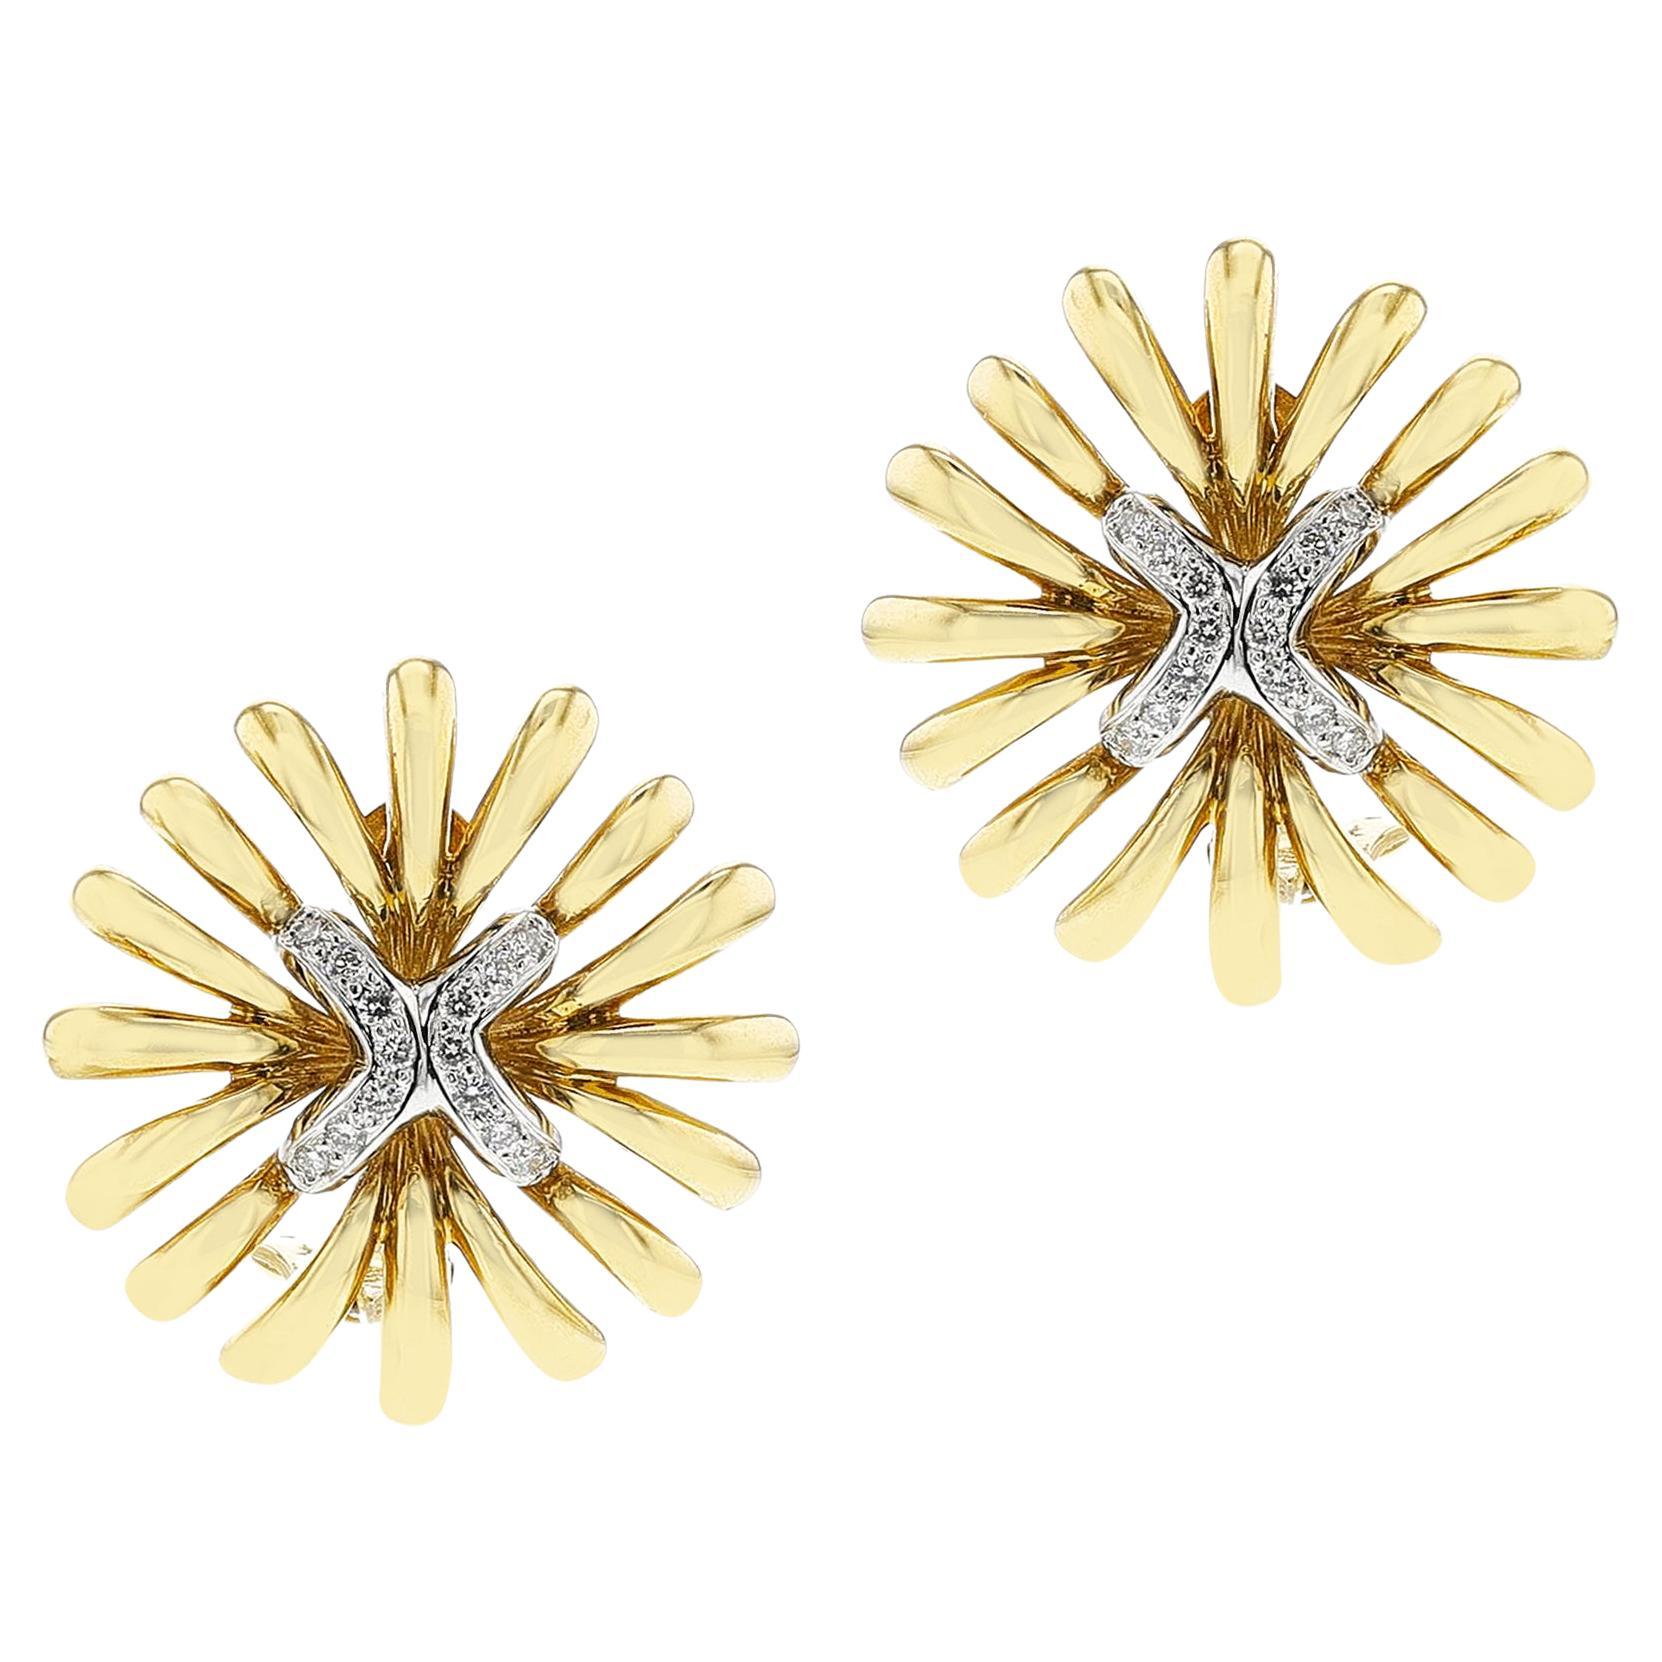 Boucles d'oreilles fleurs en or et diamants, 18 carats